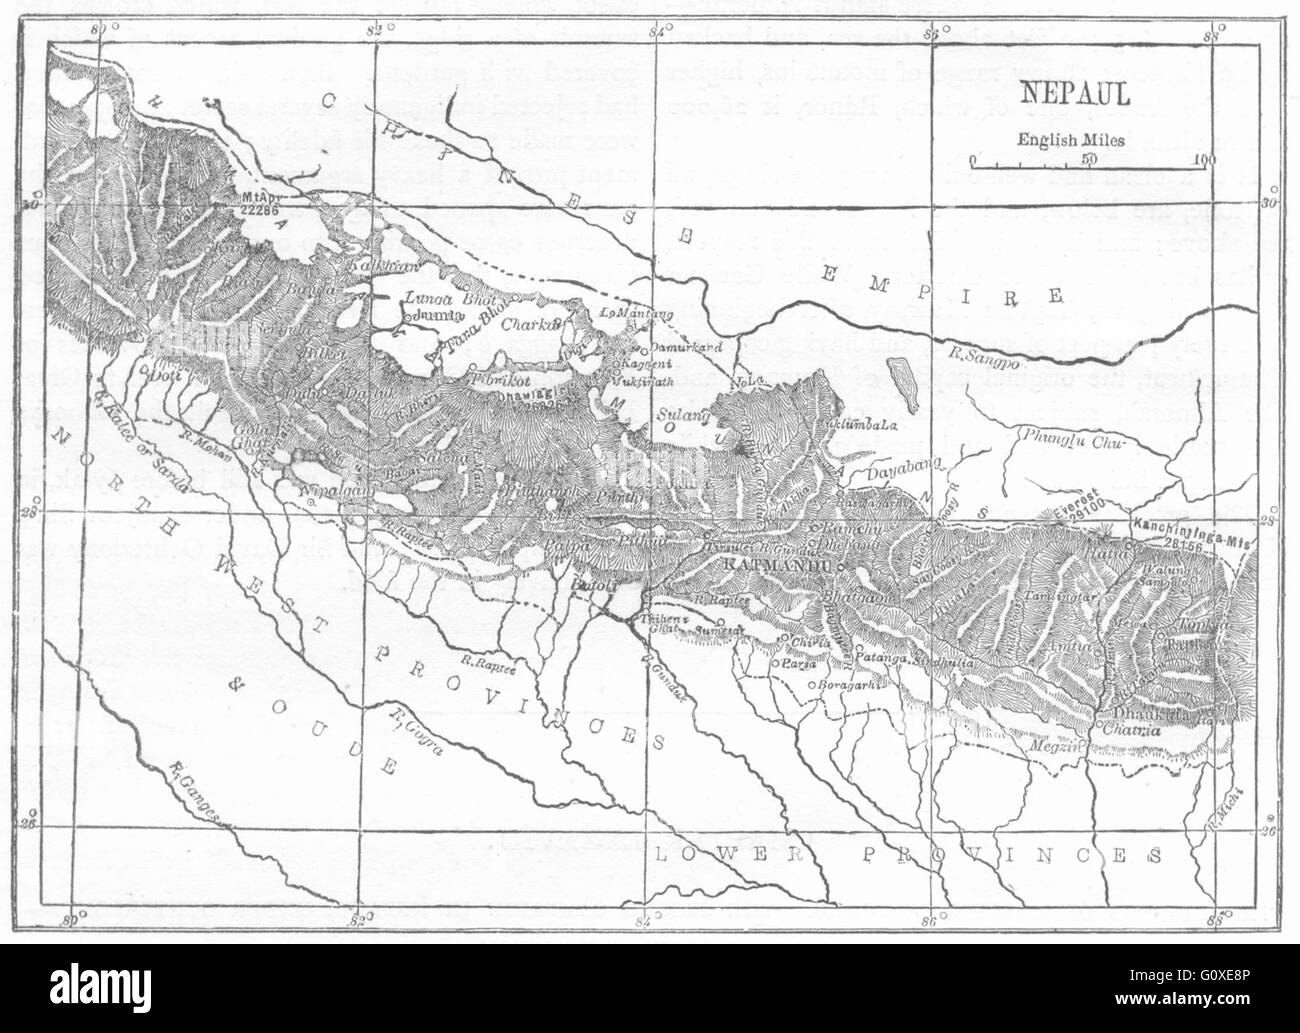 NEPAL: Map of Nepal, c1880 Stock Photo